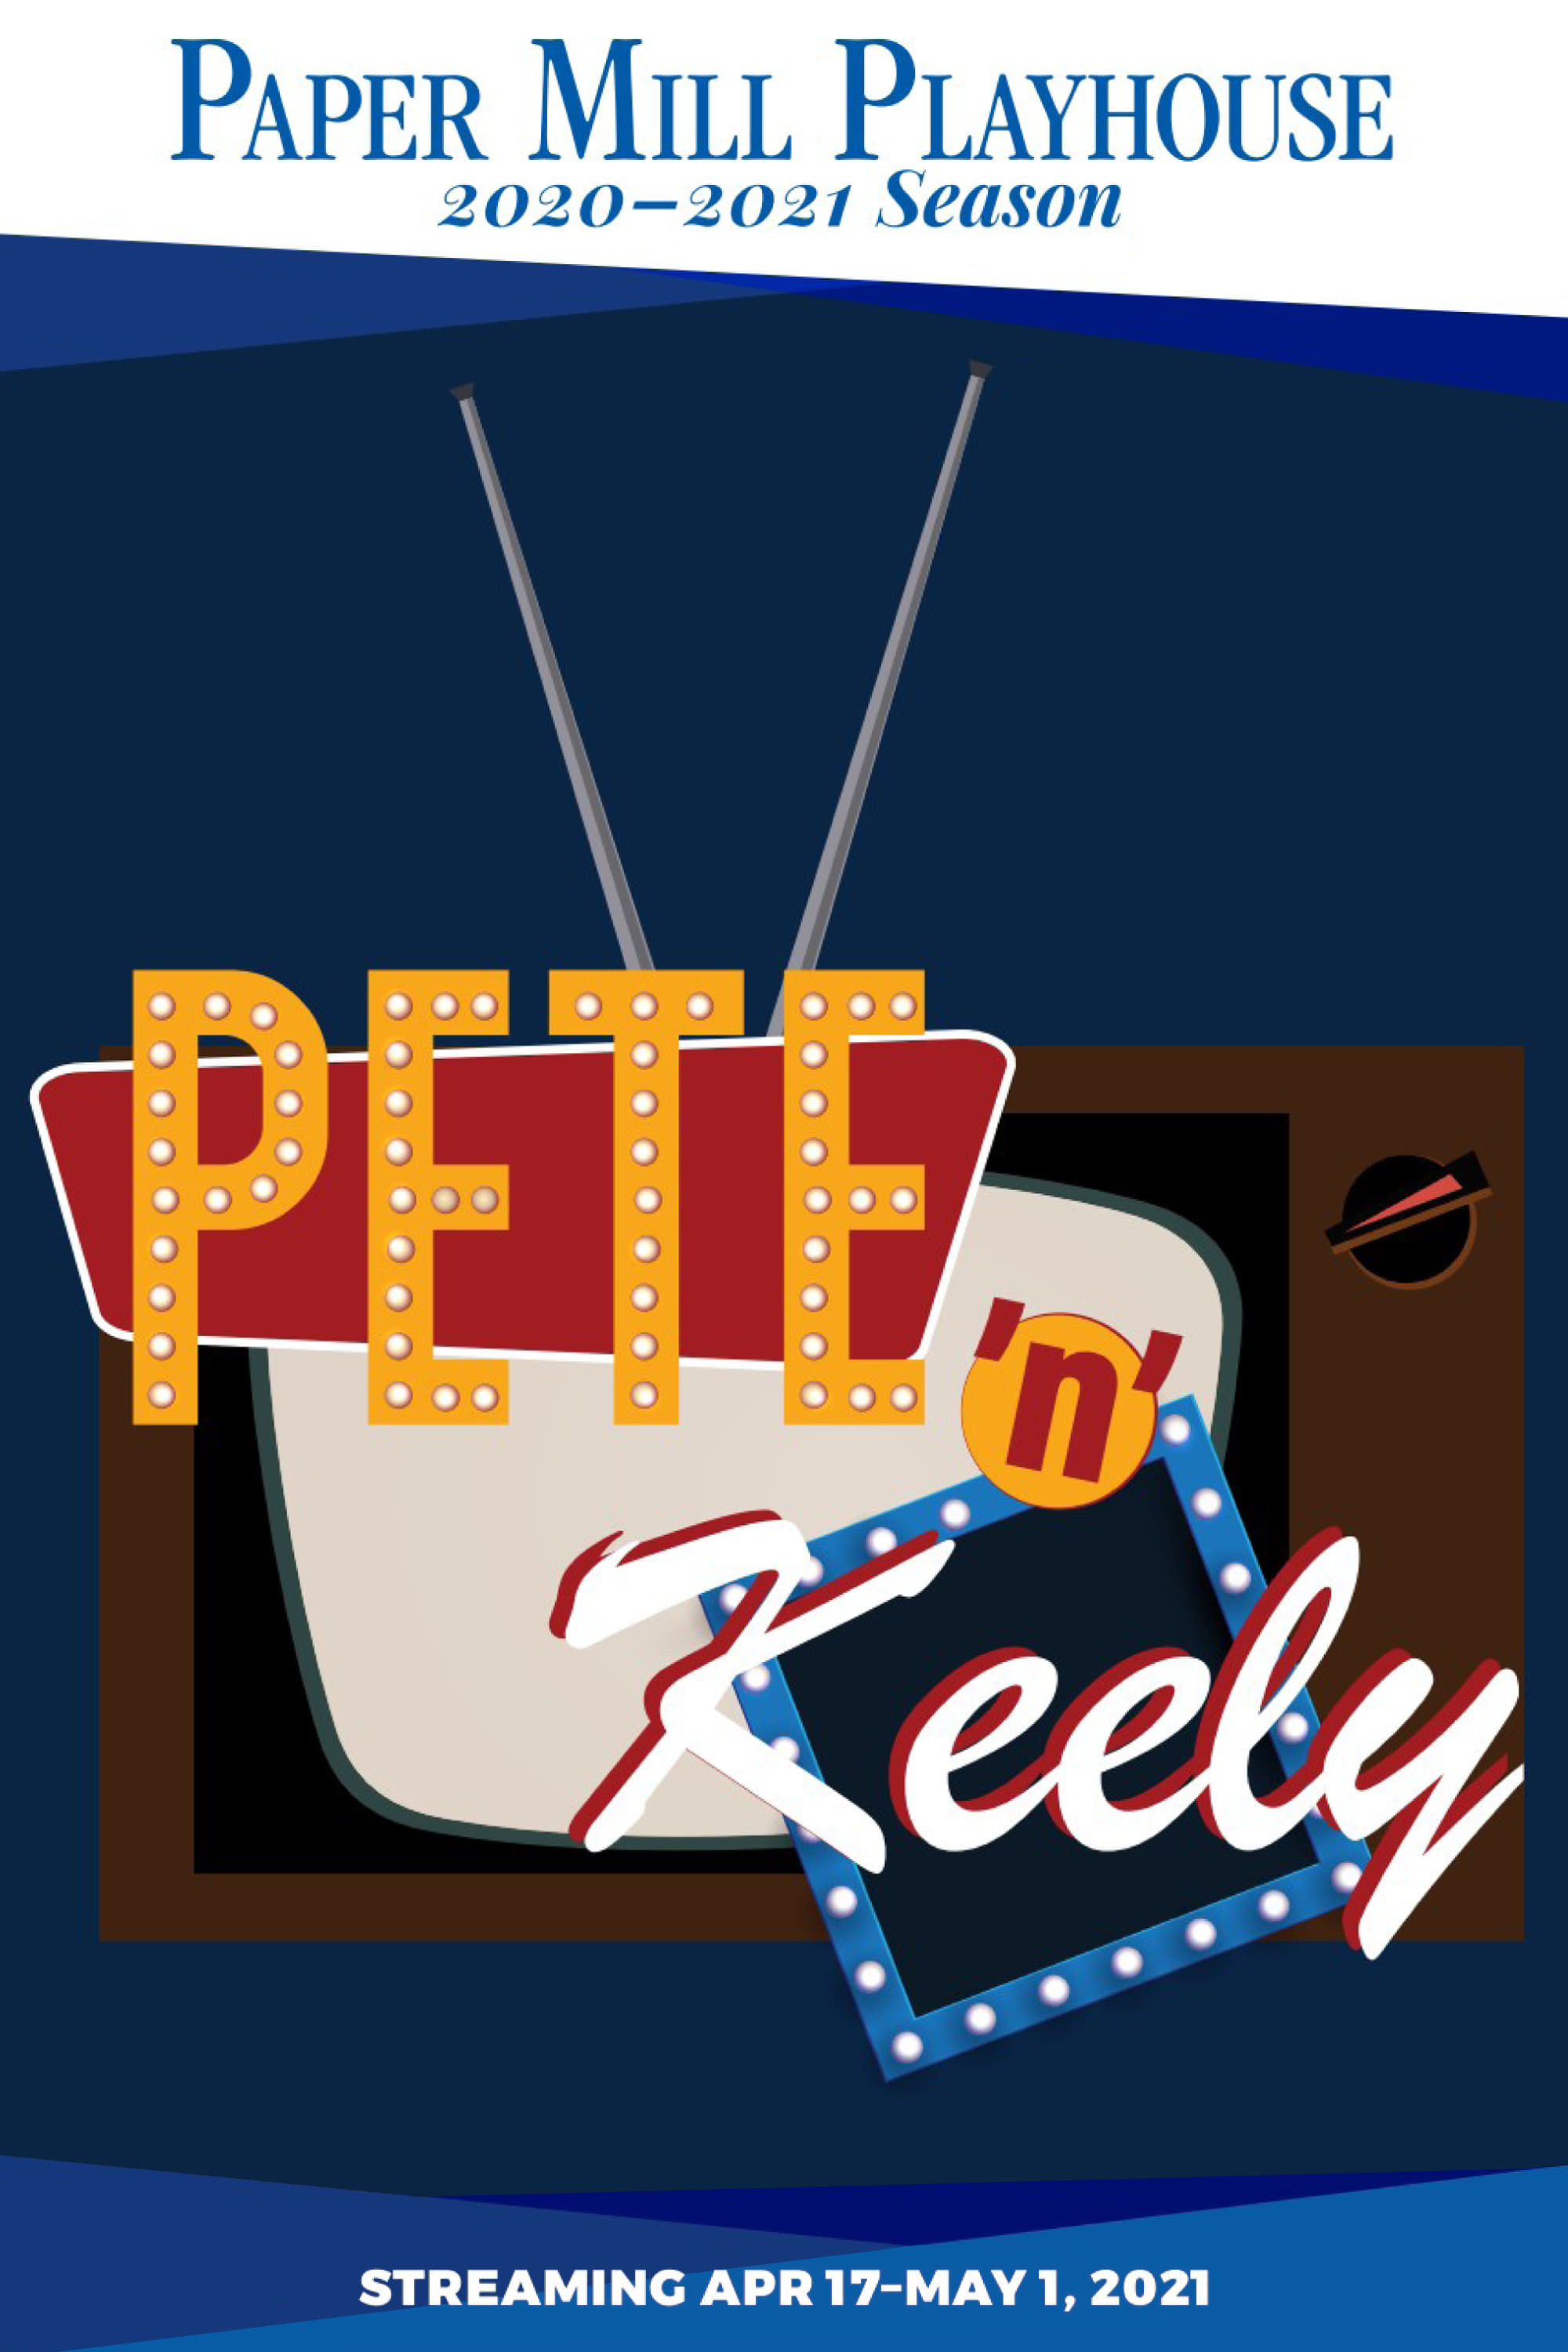 Pete 'n' Keely